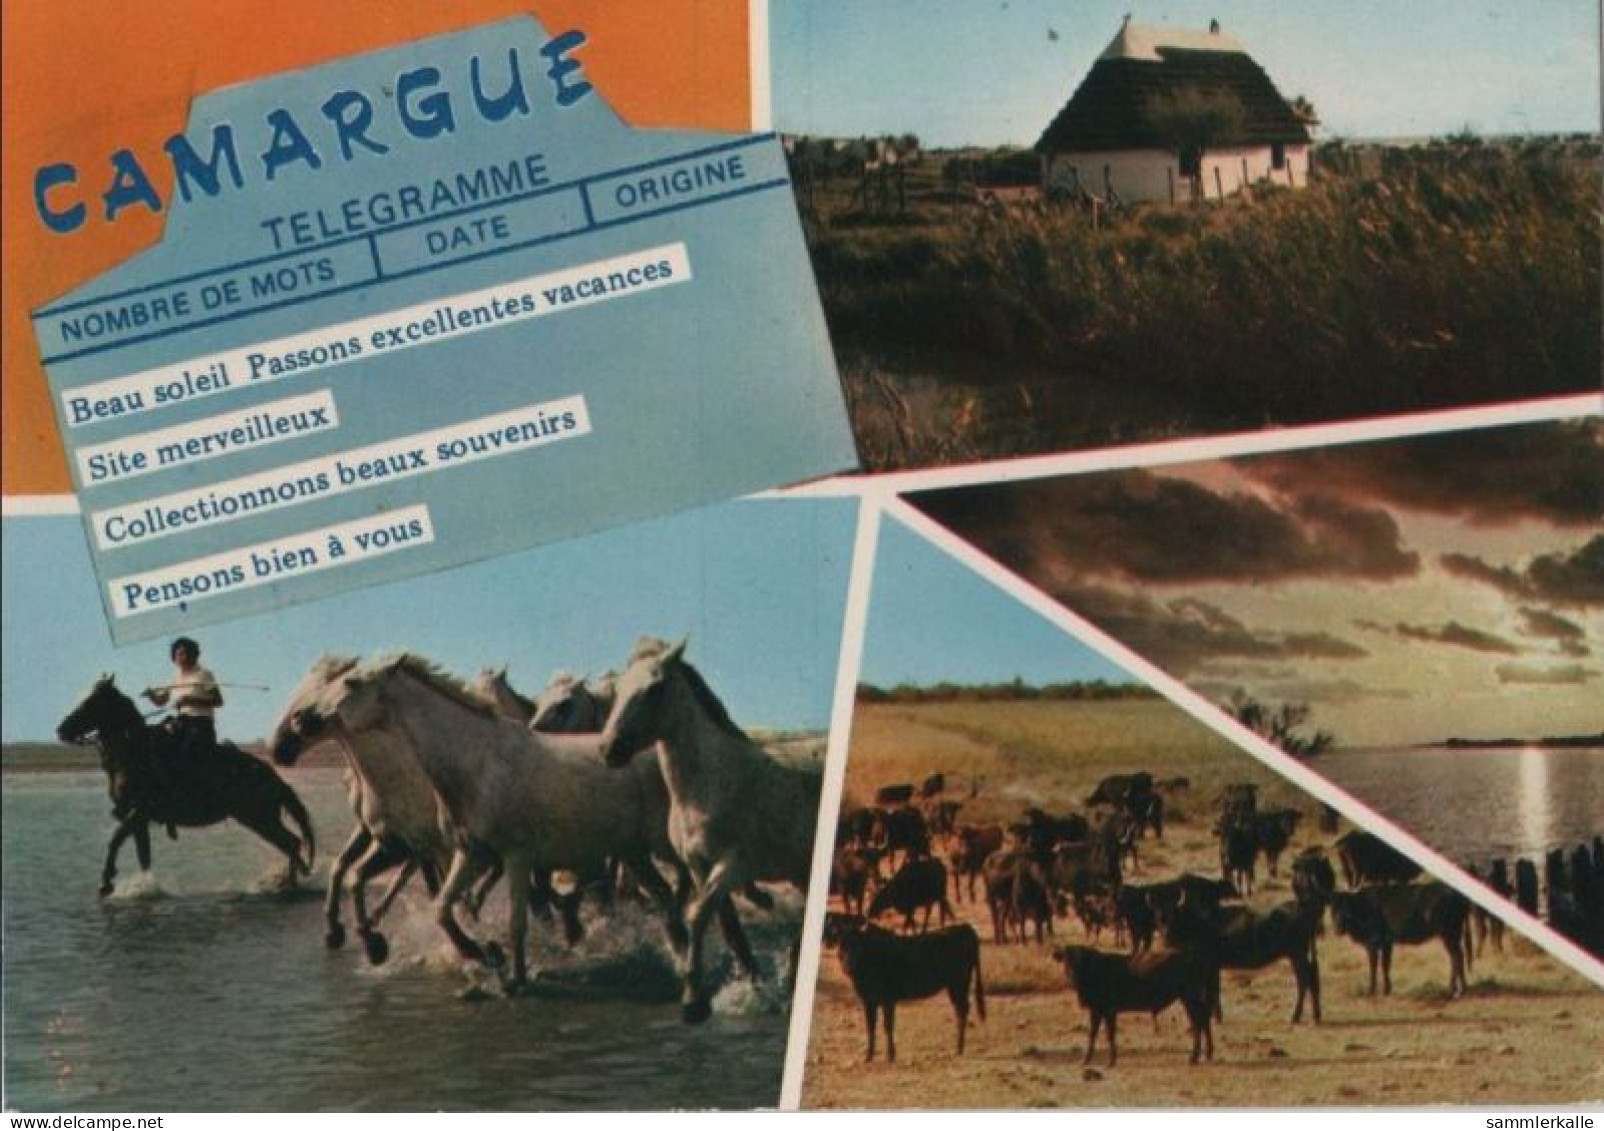 105852 - Frankreich - Camargue - Ca. 1980 - Other